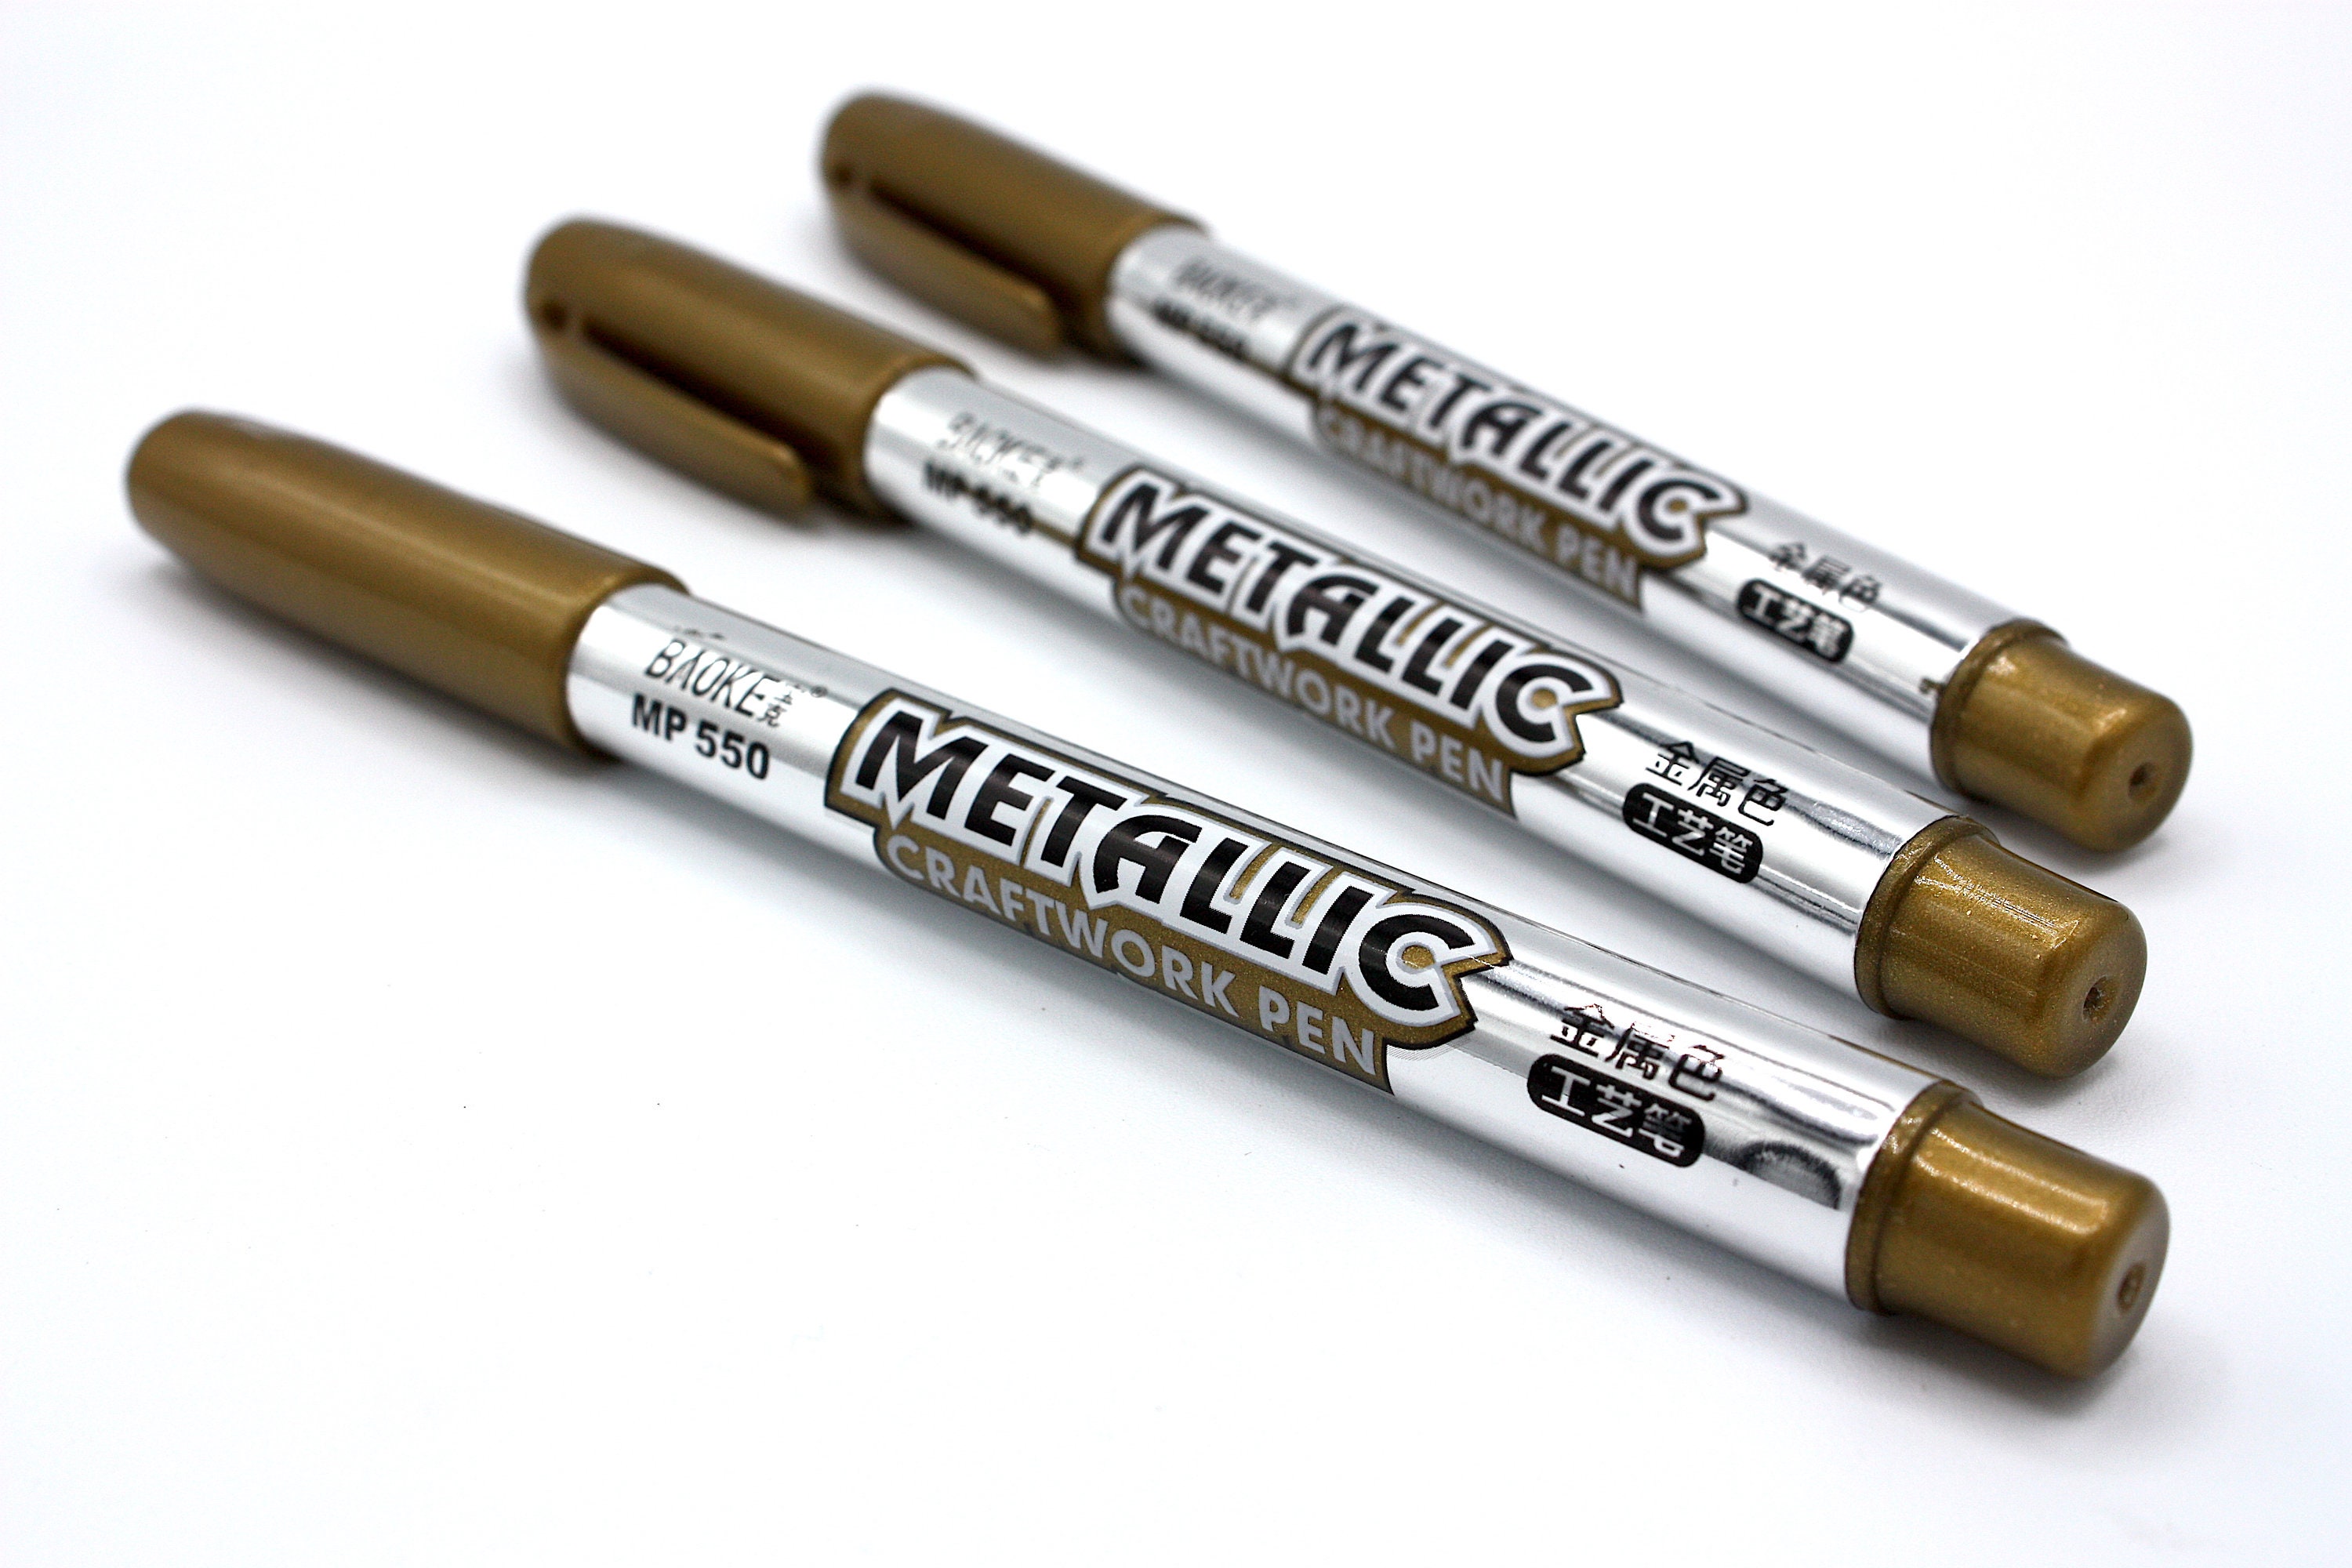  MyLifeUNIT Metallic Marker Pens, 6-Pack Metallic Gold